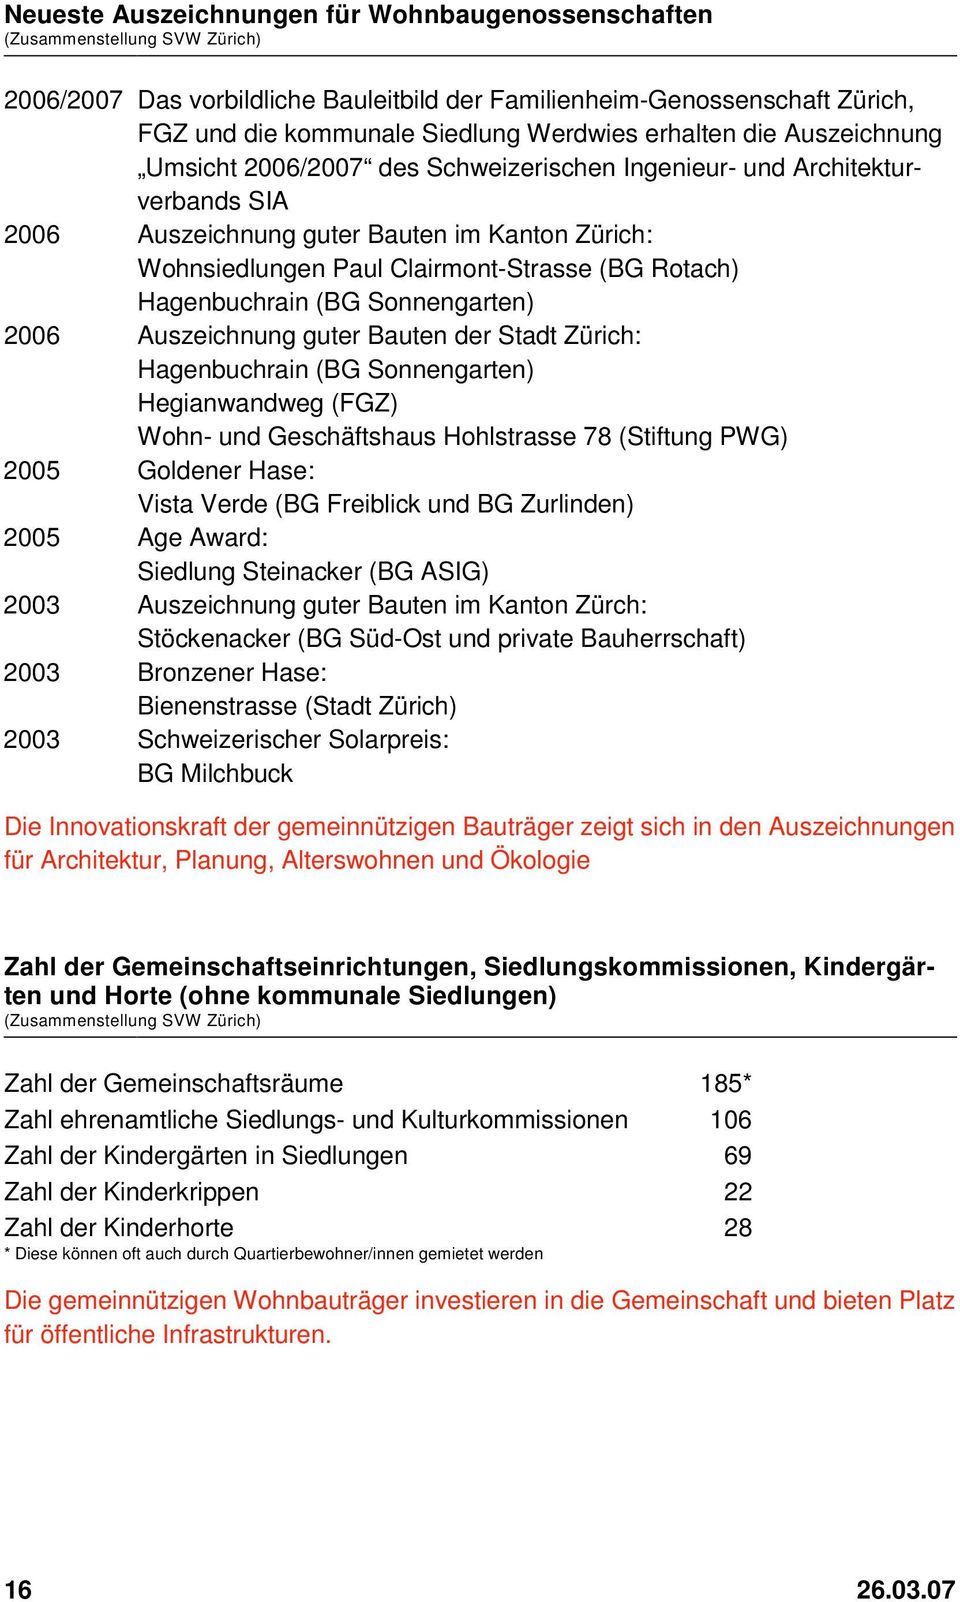 Rotach) Hagenbuchrain (BG Sonnengarten) 2006 Auszeichnung guter Bauten der Stadt Zürich: Hagenbuchrain (BG Sonnengarten) Hegianwandweg (FGZ) Wohn- und Geschäftshaus Hohlstrasse 78 (Stiftung PWG) 2005